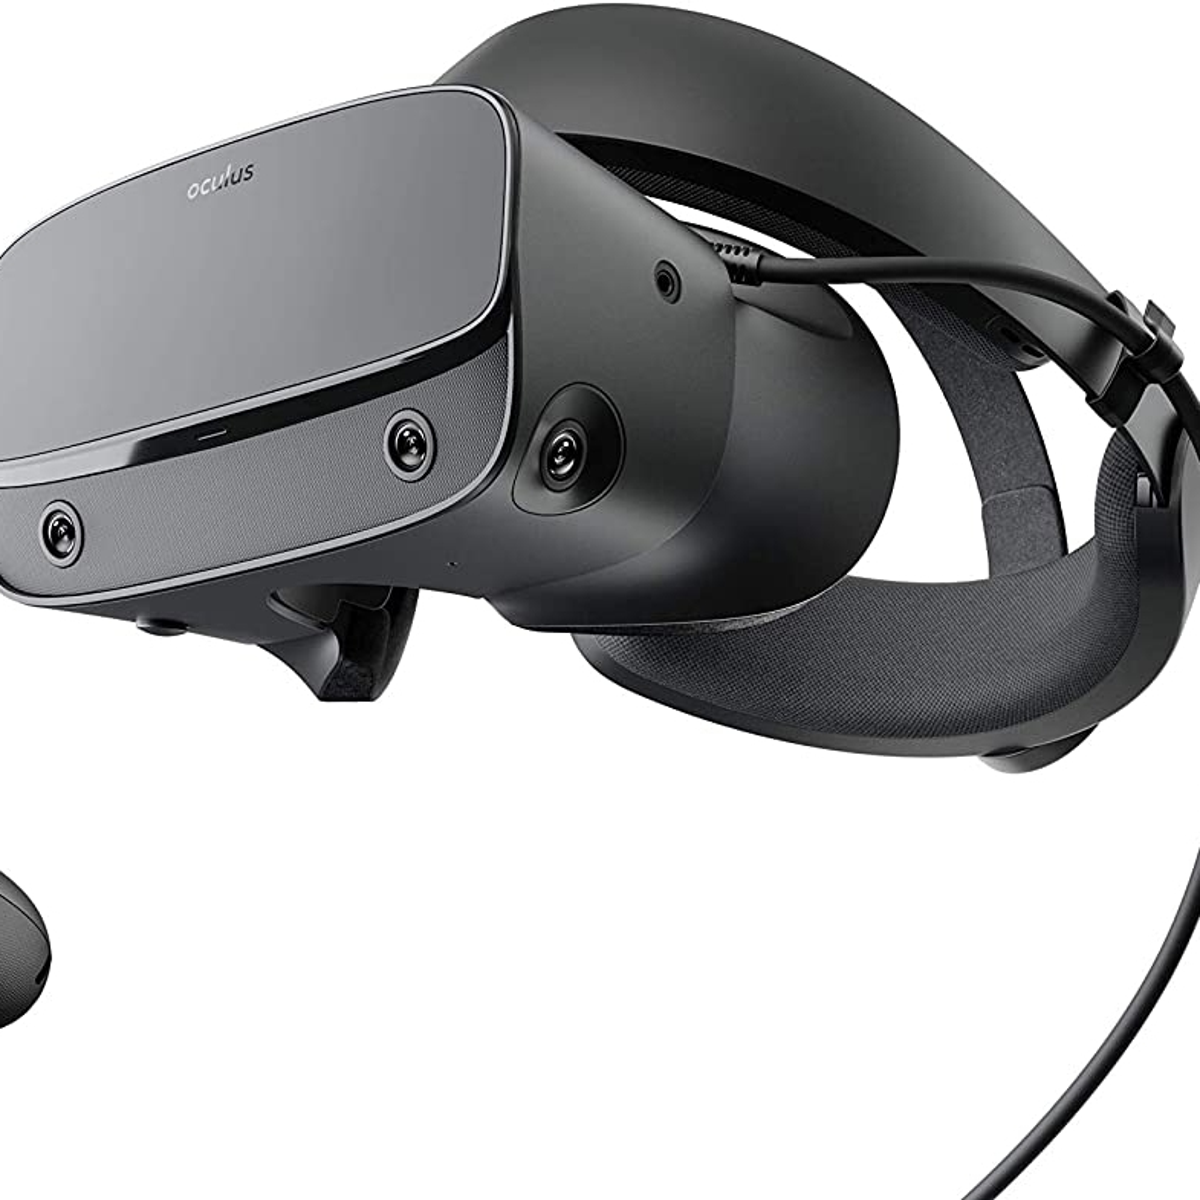 Misforståelse hemmeligt tyveri The Oculus Rift 2 VR headset is £100 less on Amazon UK | Eurogamer.net